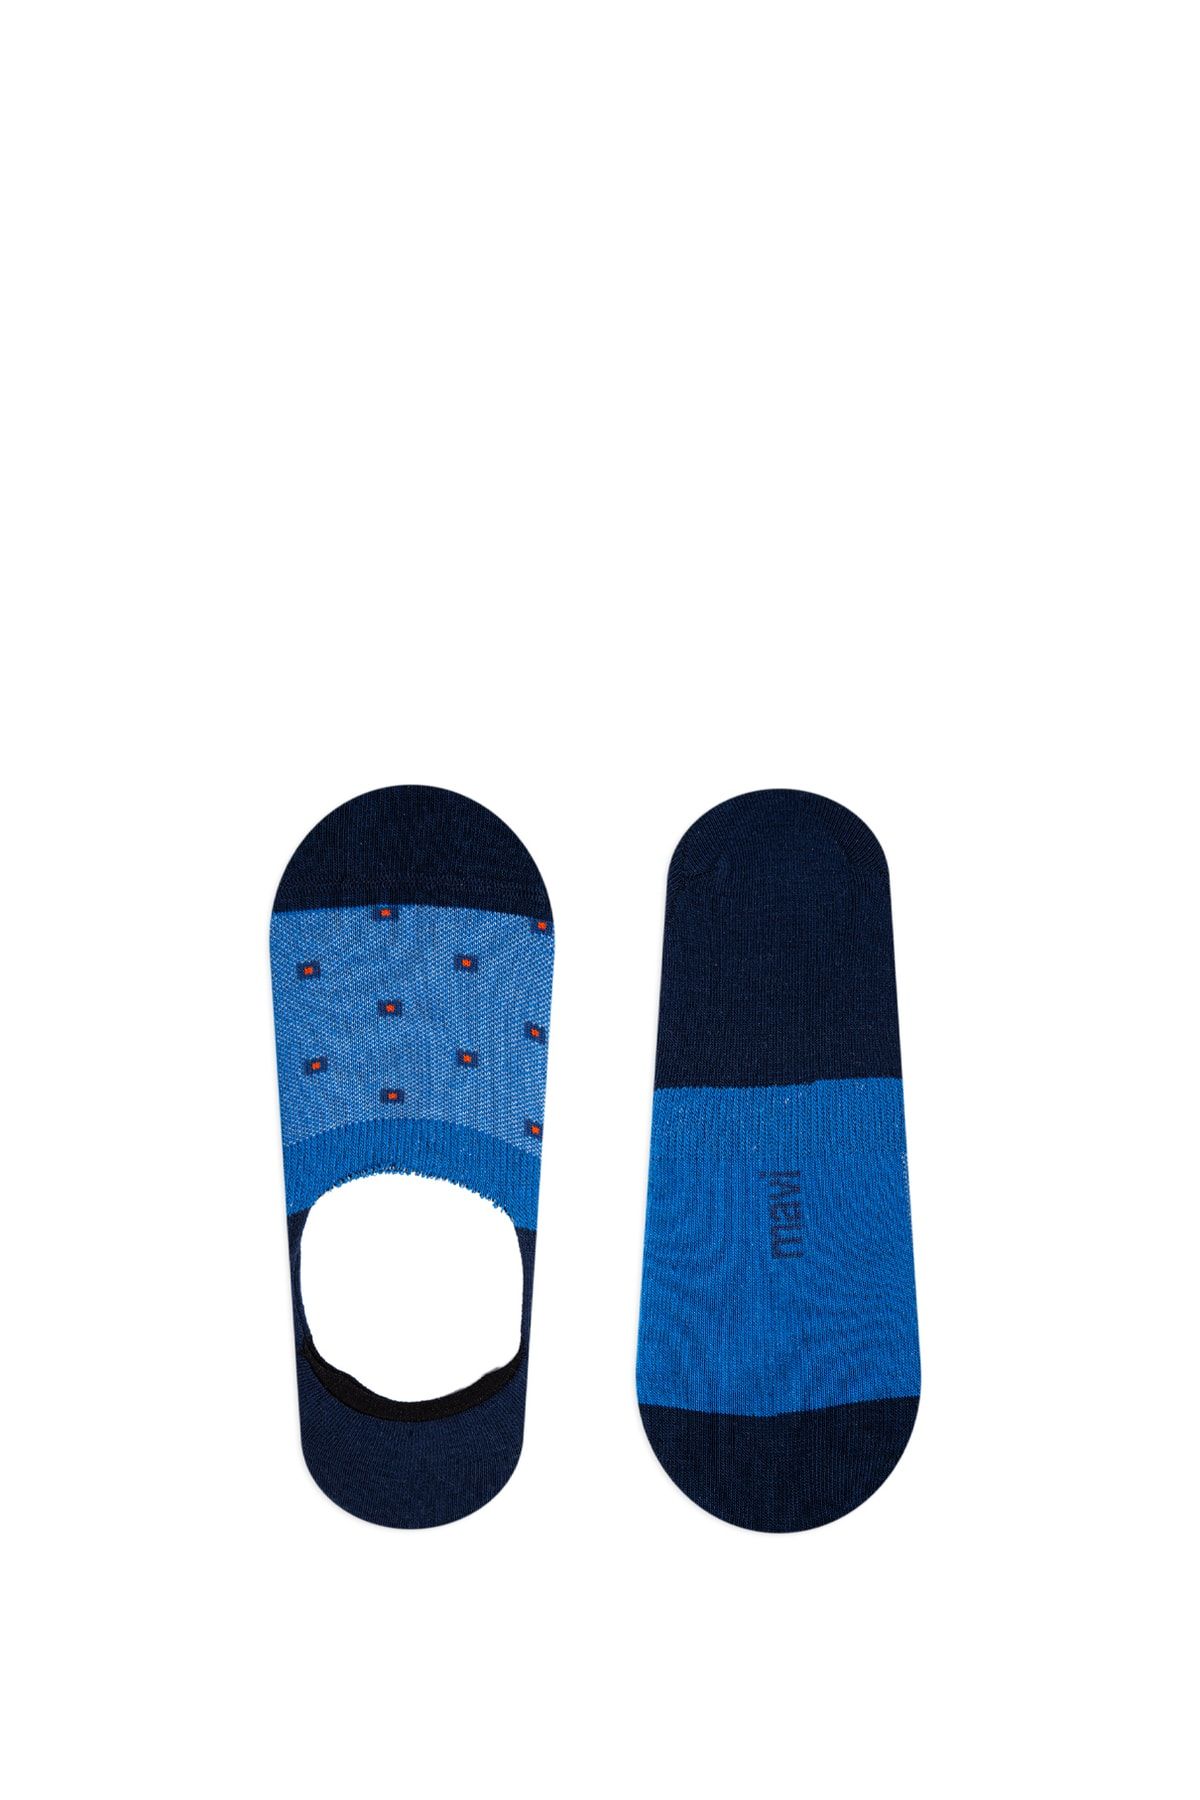 Mavi Lacivert Babet Çorabı 0910750-30717